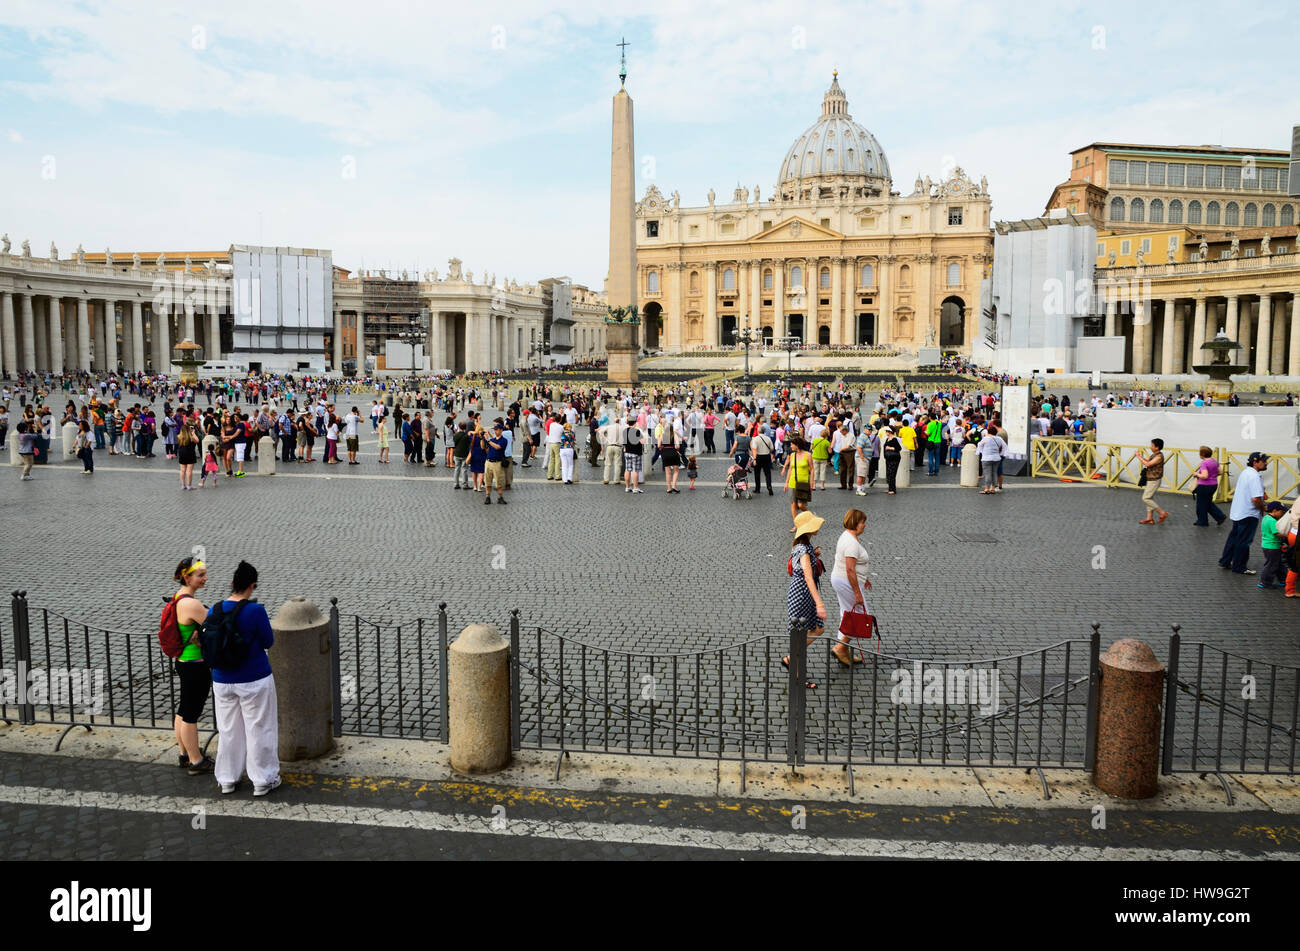 Basilica di San Pietro e Piazza San Pietro. Lo Stato della Città del Vaticano. Roma, Lazio, l'Italia, l'Europa. Foto Stock